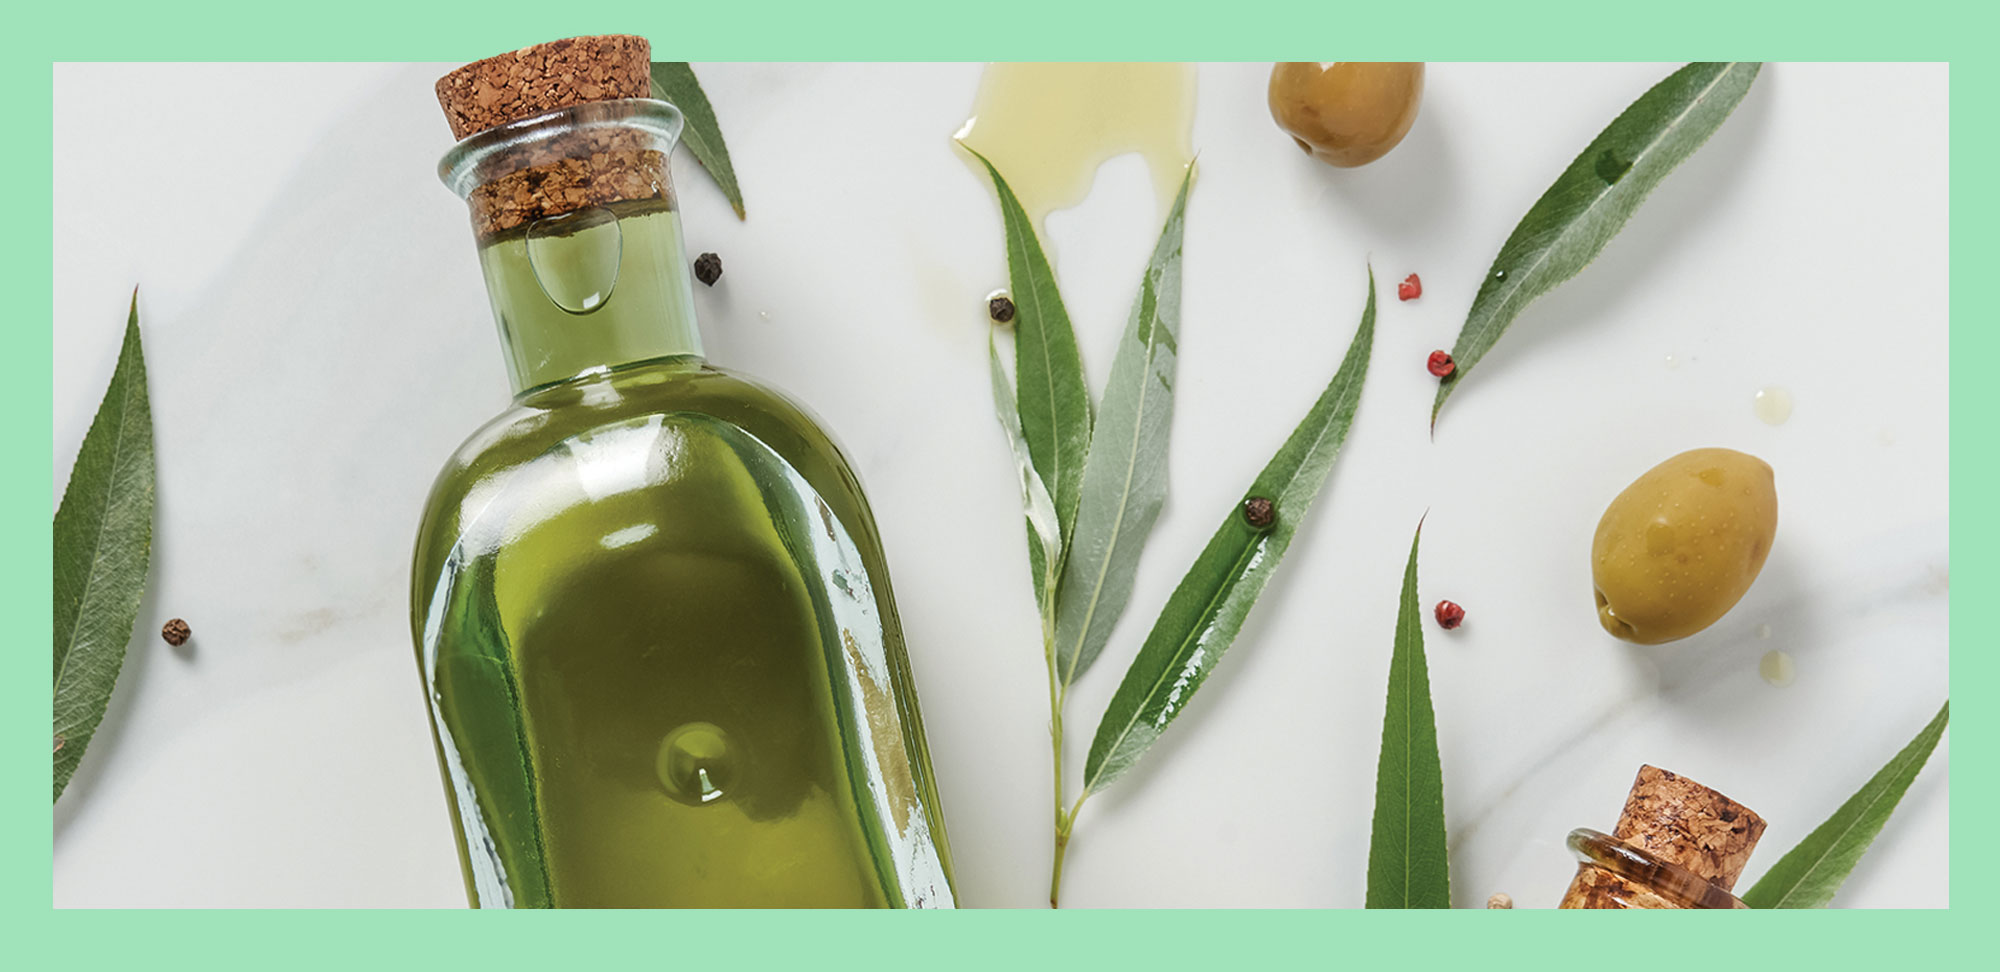 Photo de la partie supérieure de deux bouteilles d’huile d’olive et de feuilles sur une table en marbre